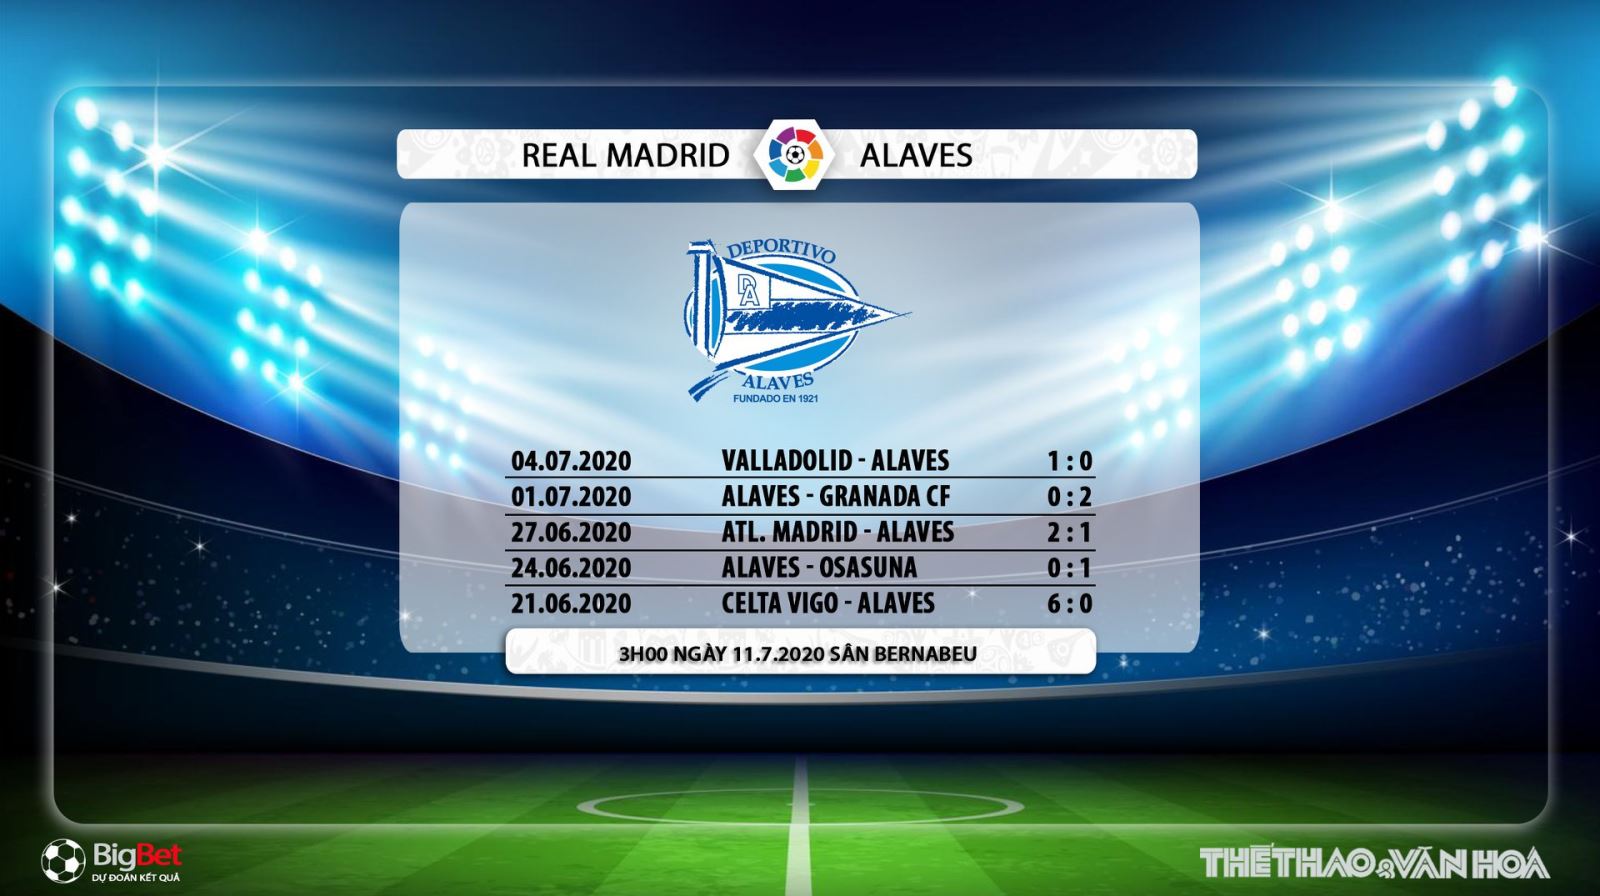 Real Madrid vs Alaves, trực tiếp Real Madrid vs Alaves, lịch thi đấu bóng đá hôm nay, nhận định bóng đá, kèo bóng đá, nhận định bóng đá Real Madrid vs Alaves, Real Madrid, Alaves